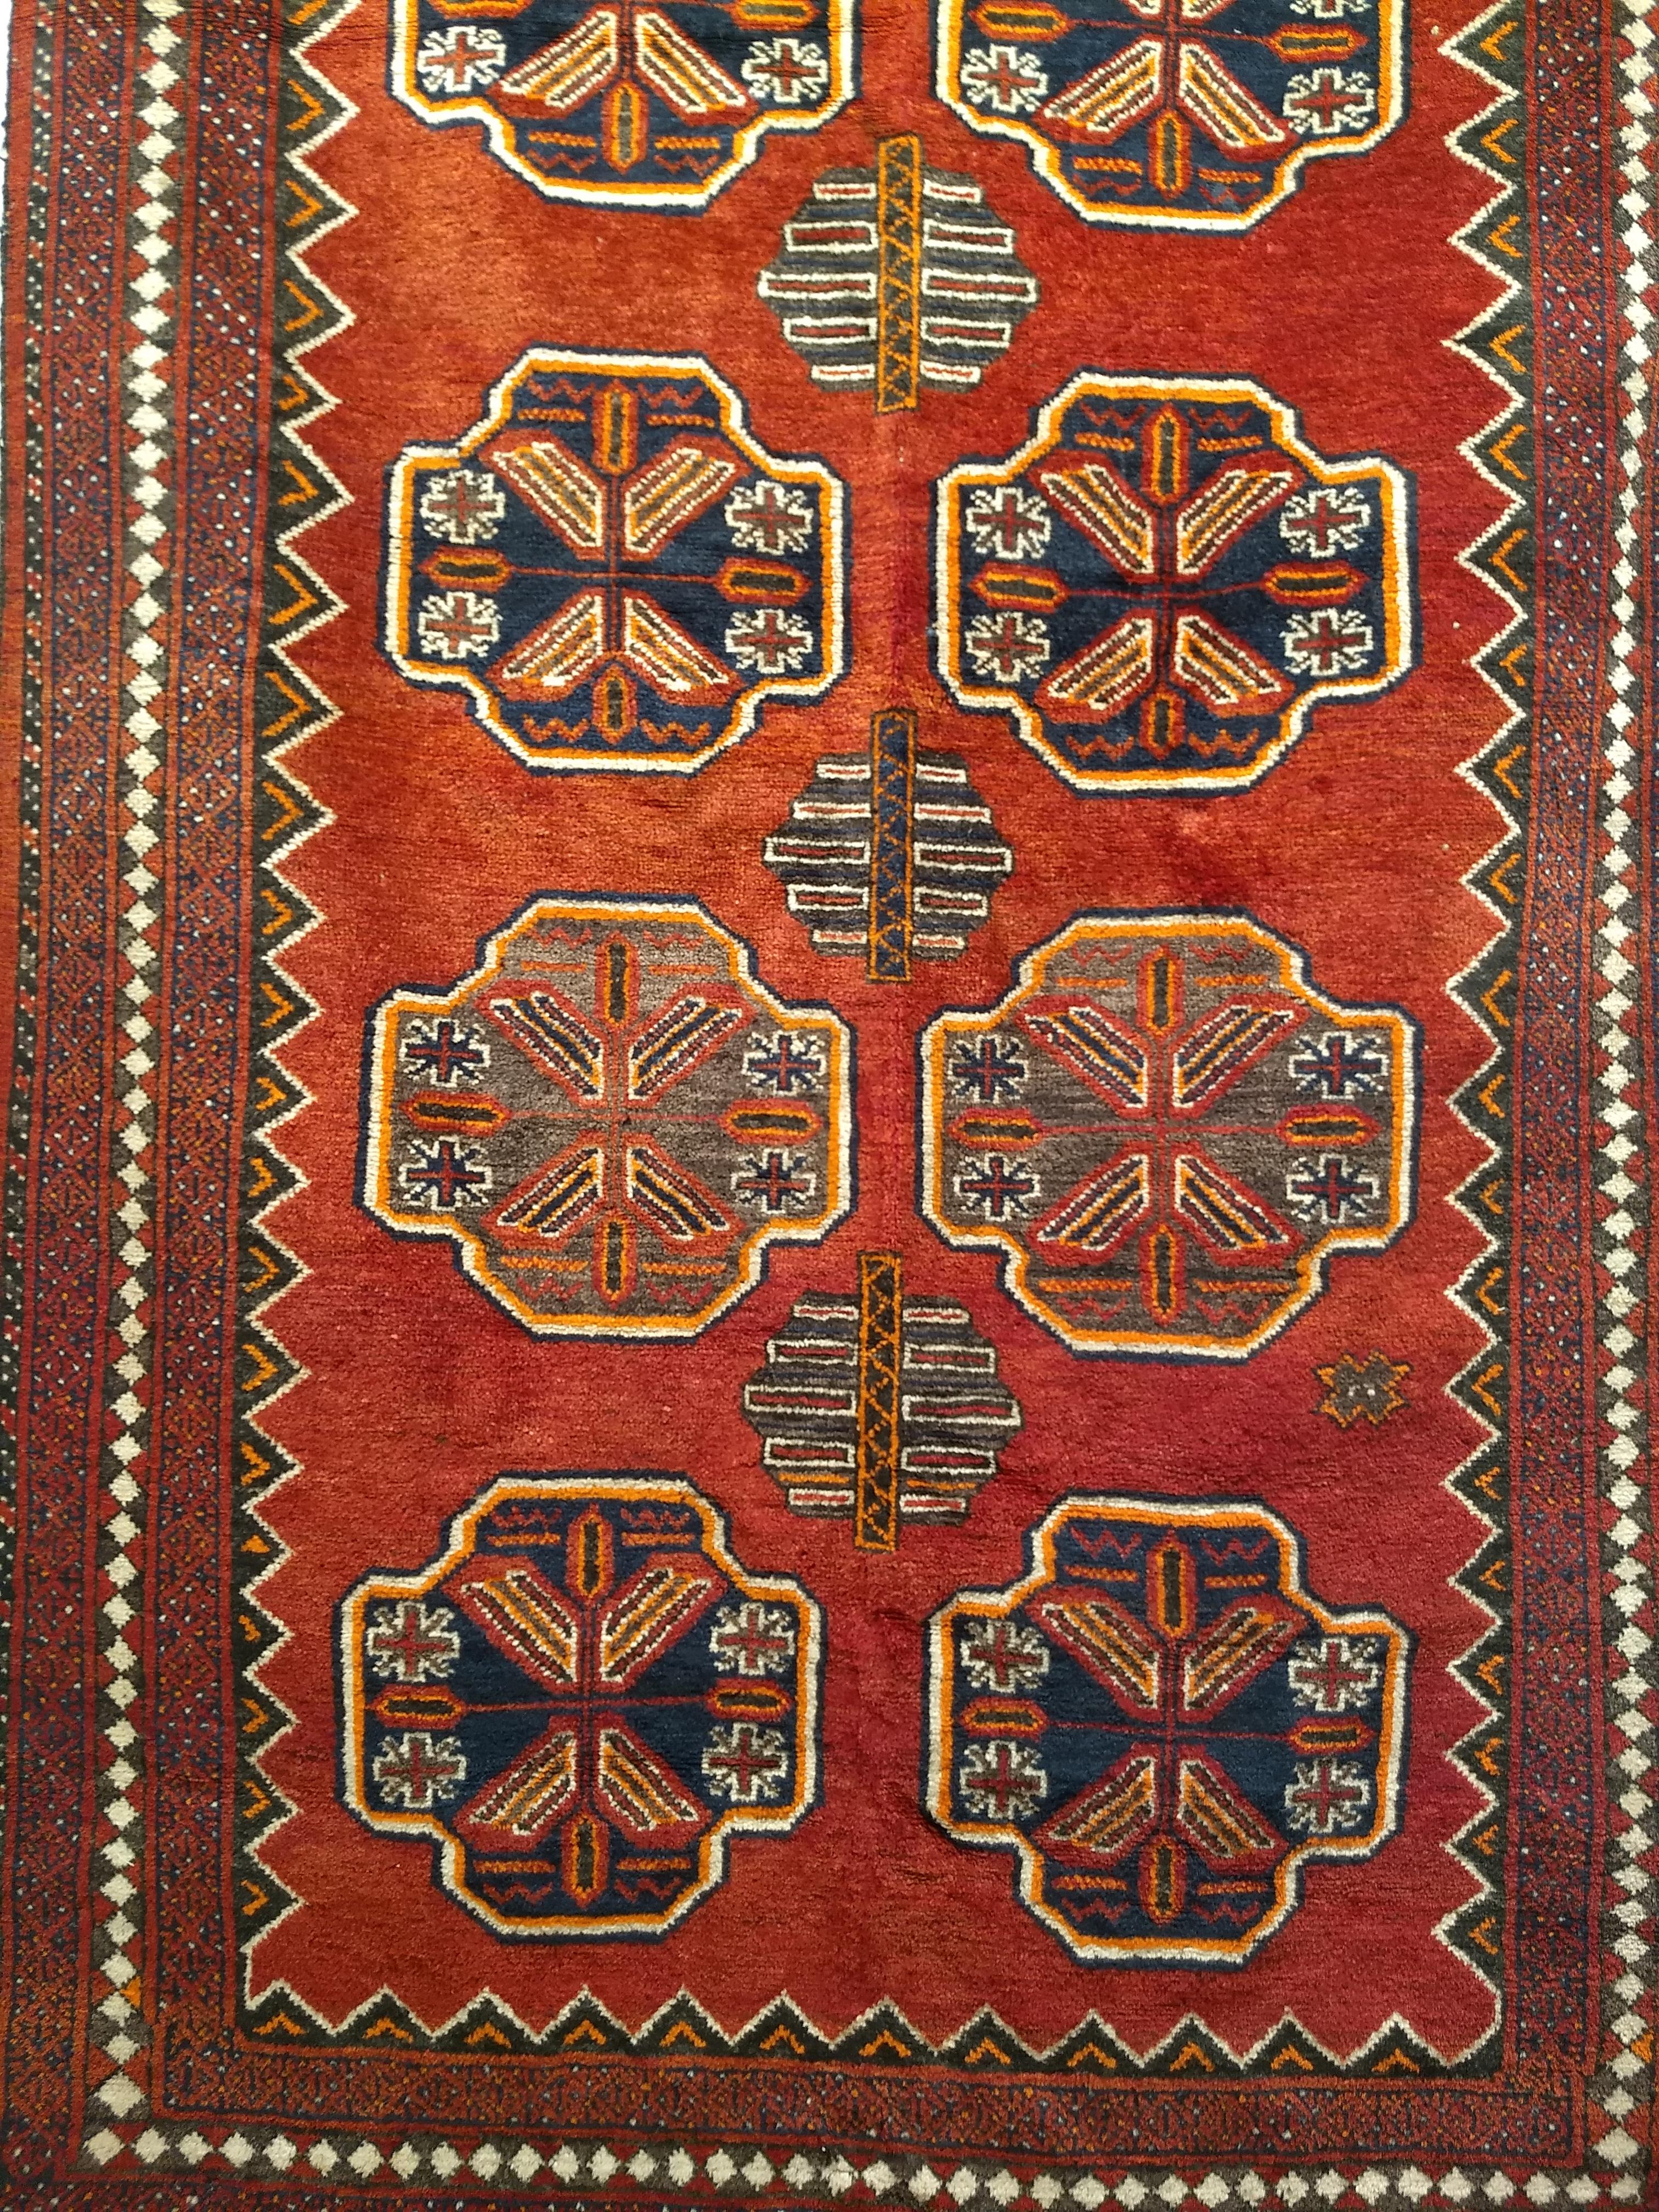 Vintage Tekke Bokhara Stammesbereich oder Korridor Teppich aus der Mitte der 1900er Jahre.  Der Teppich hat ein ganzflächiges geometrisches Muster mit achteckigen Medaillons namens 